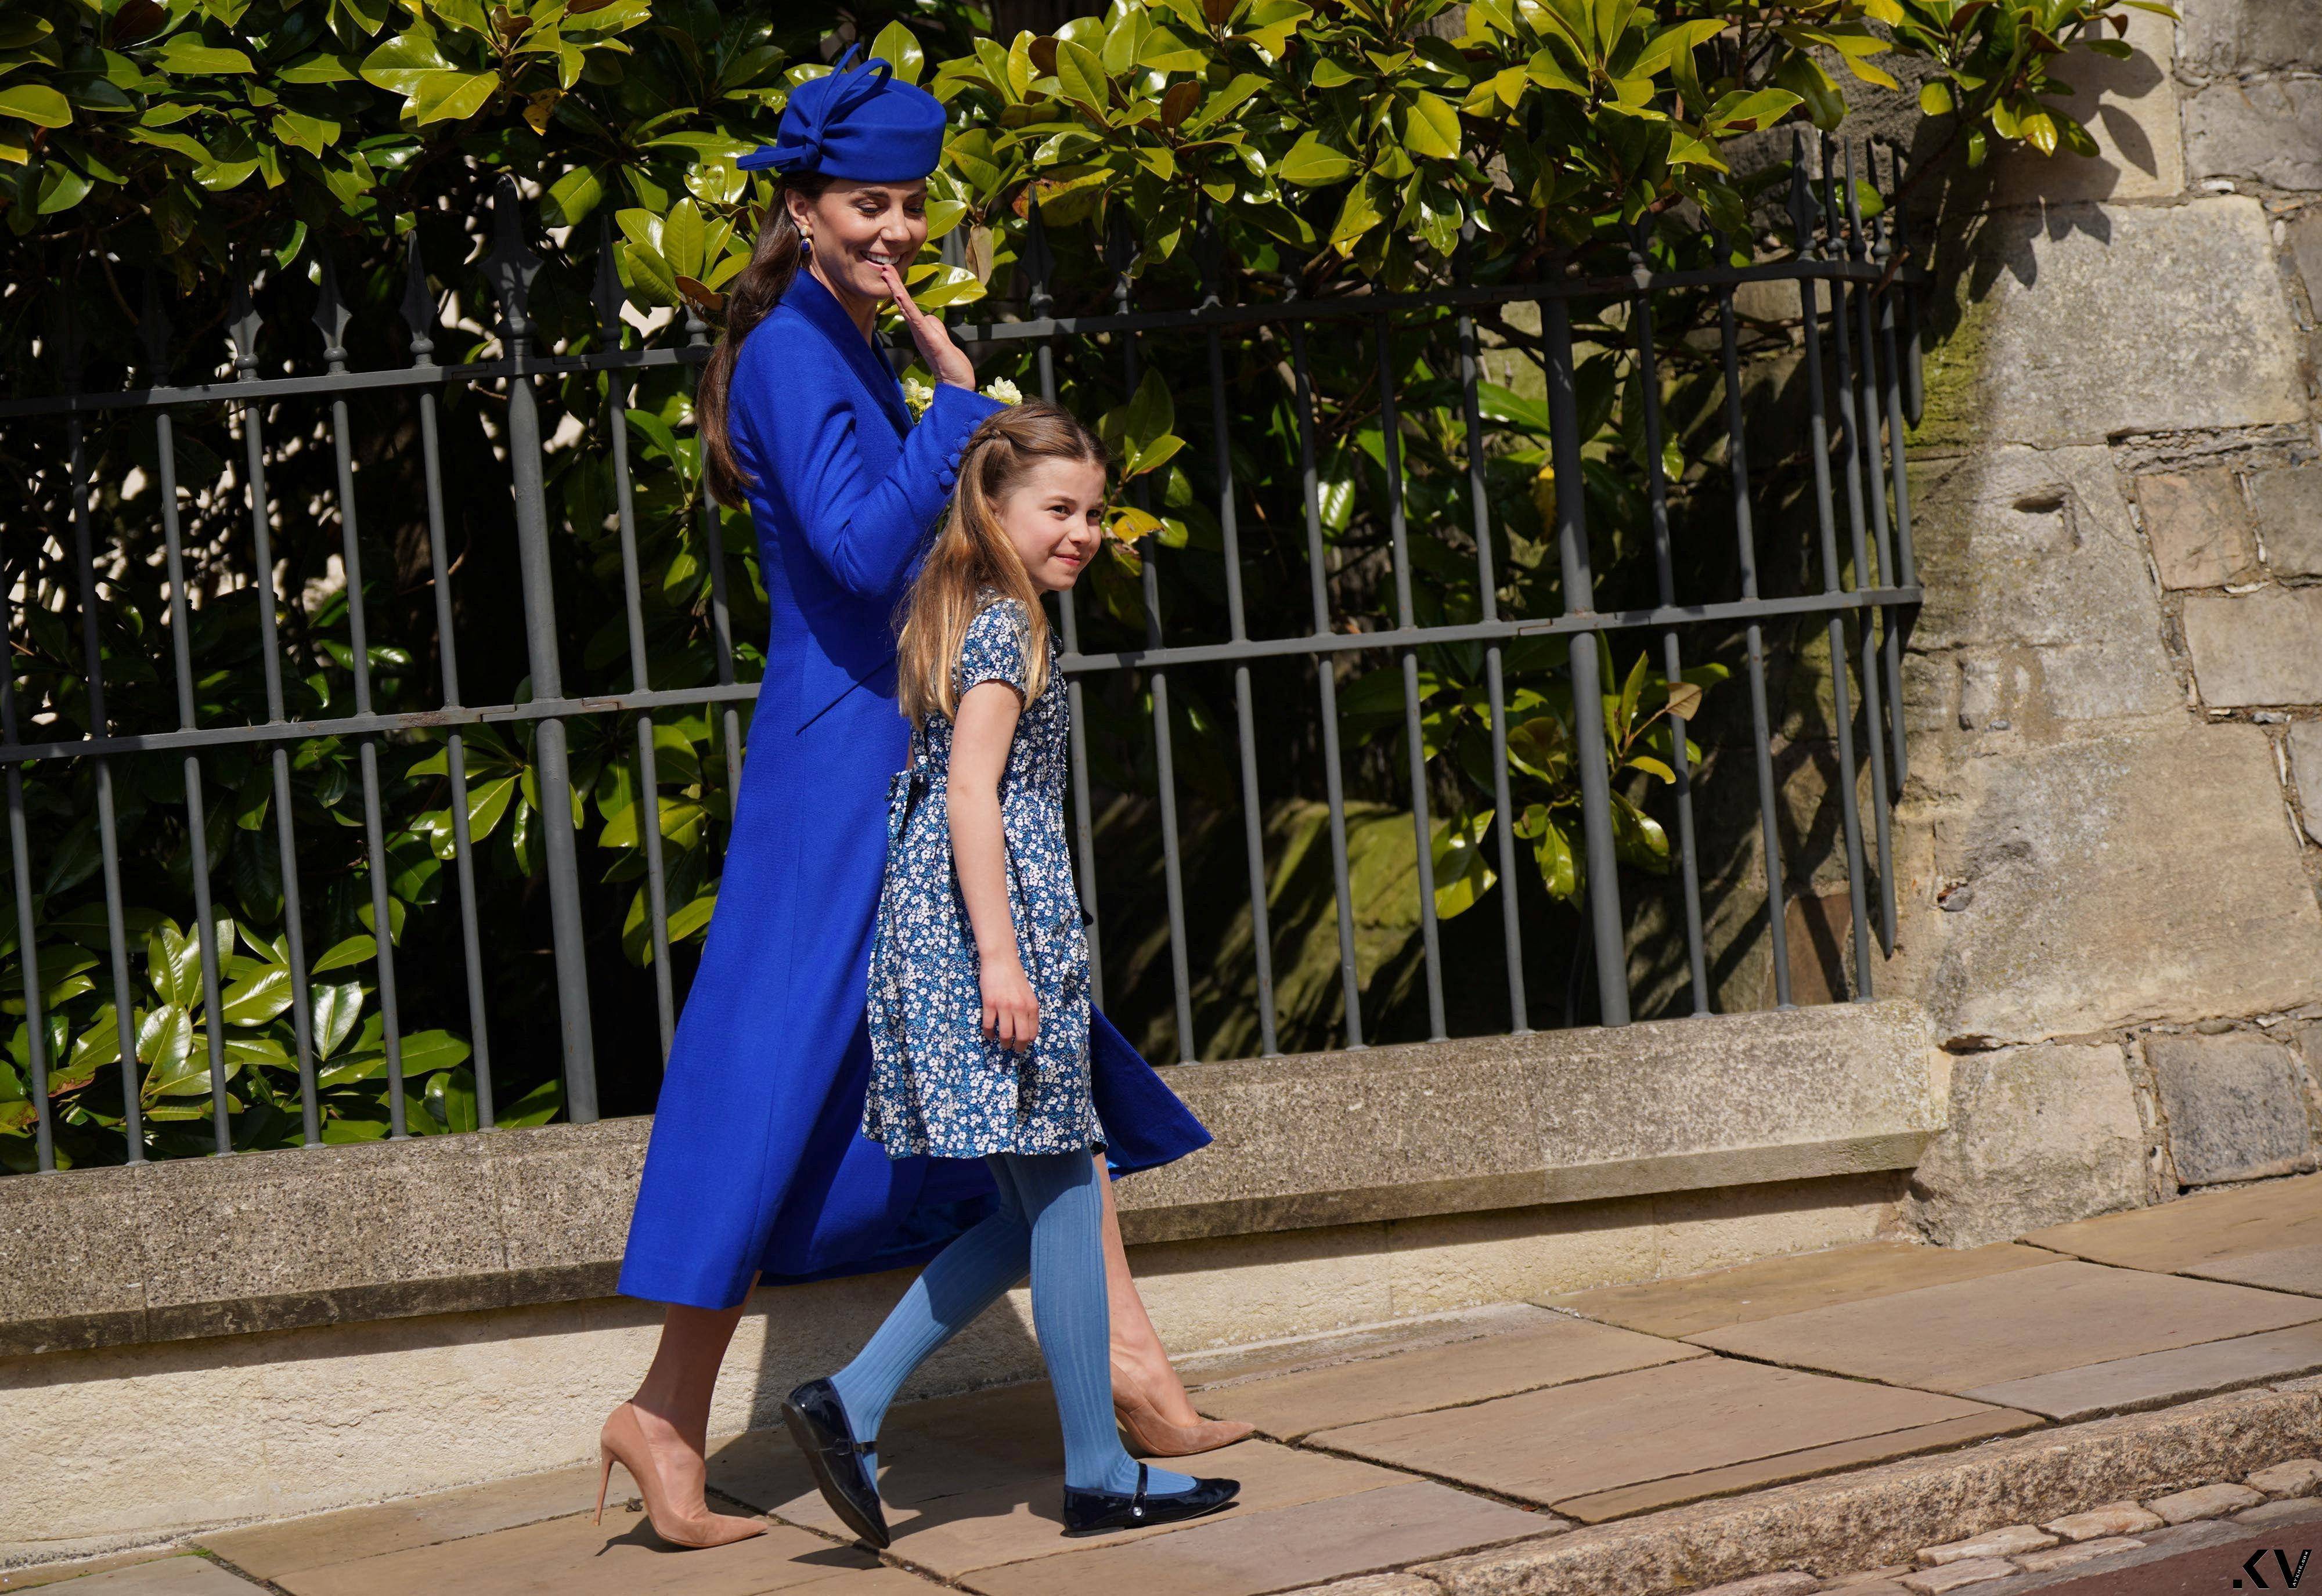 凯特王妃电光蓝旧衣照样美　戴5,000元耳环秒杀完售 时尚穿搭 图2张